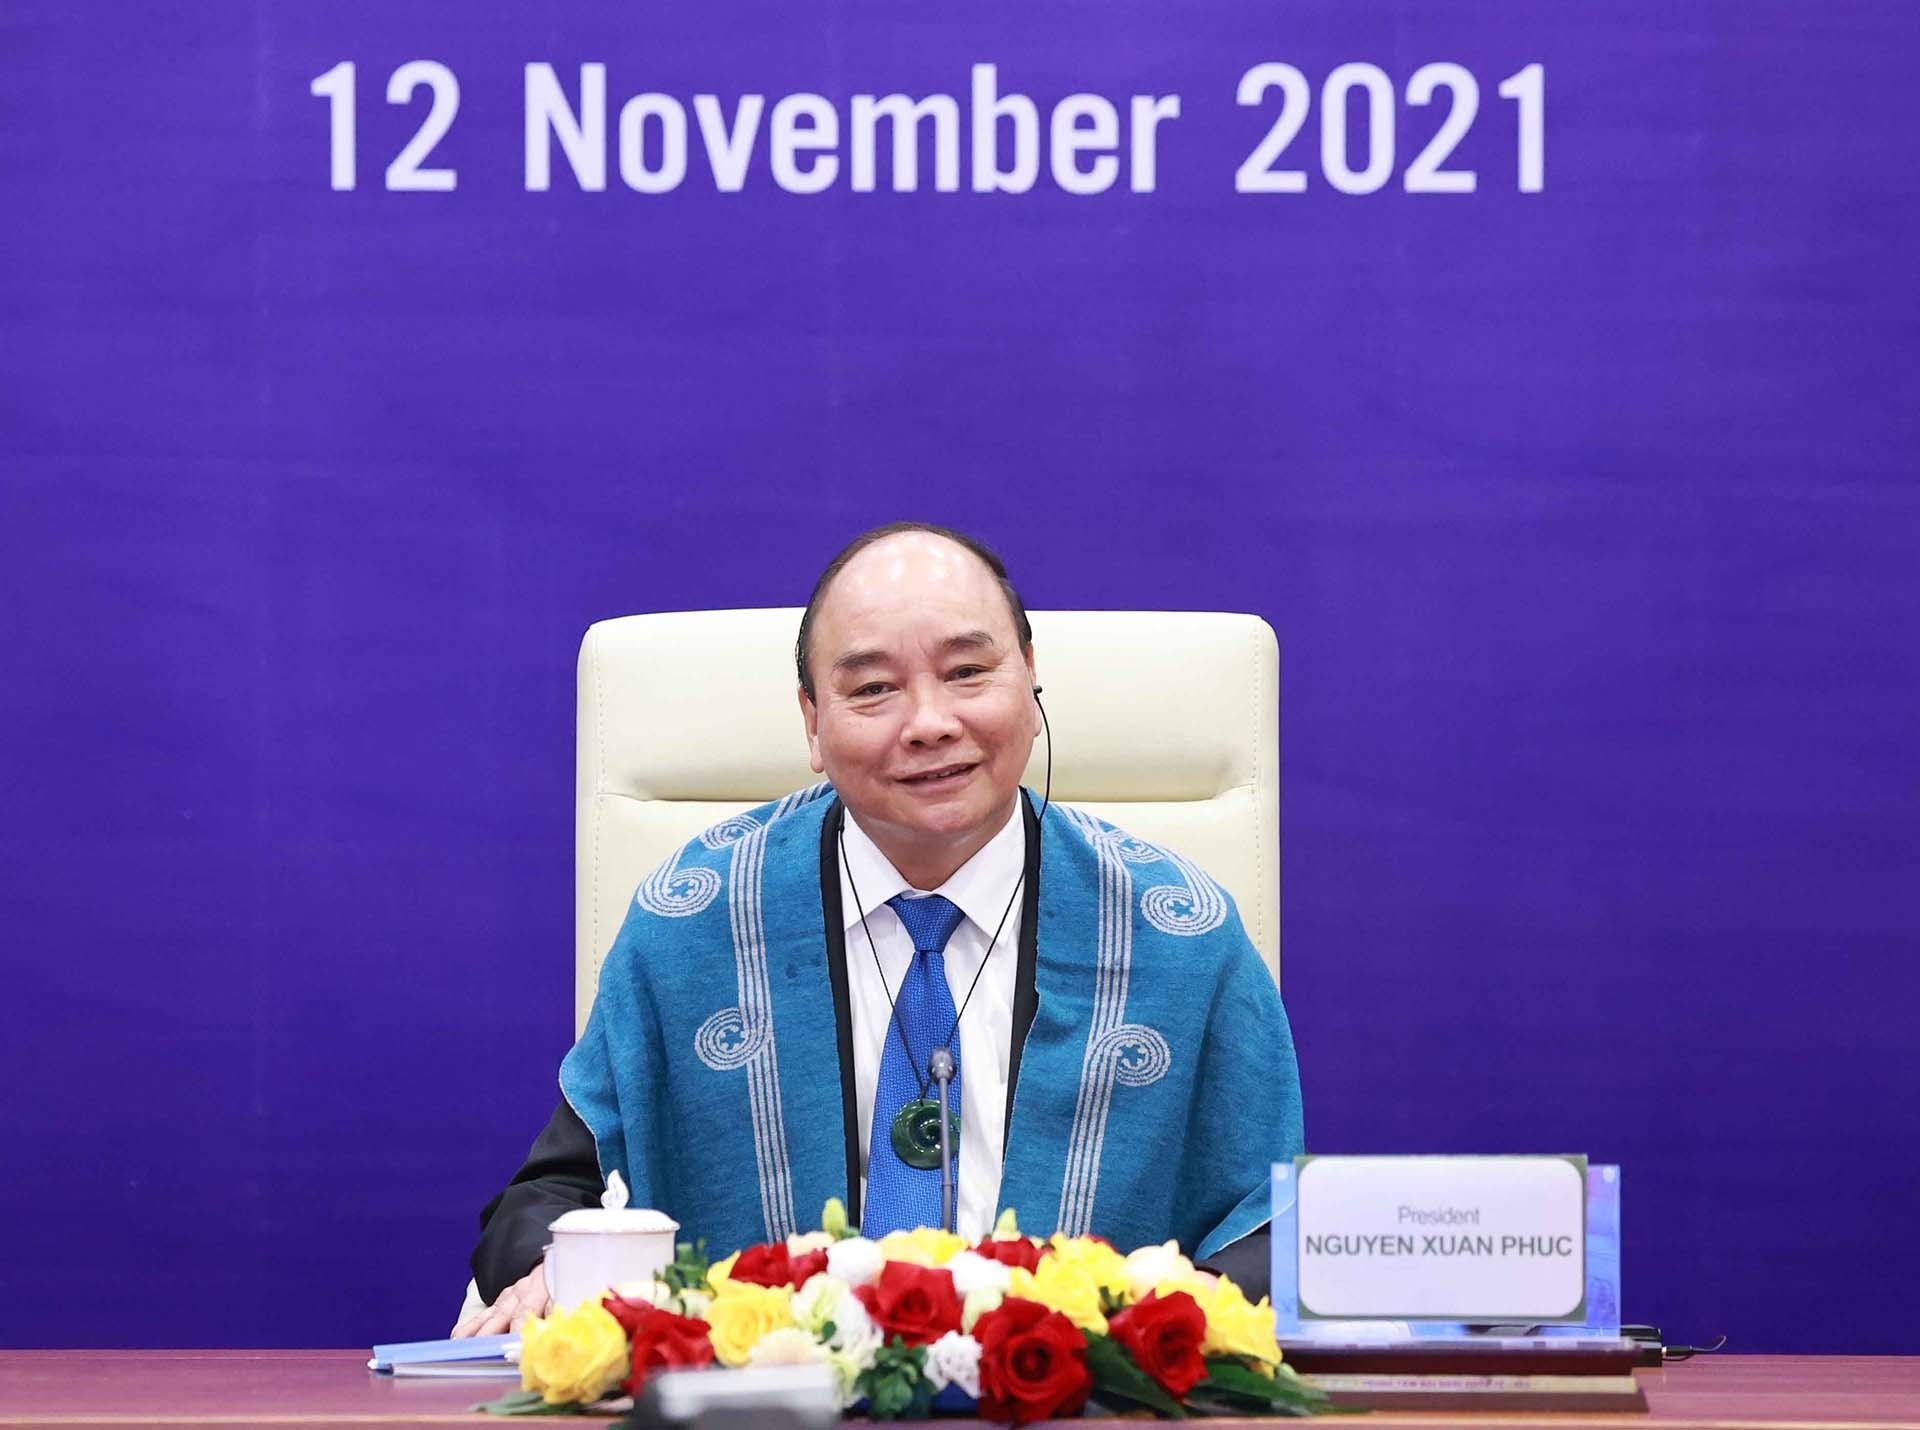 越南国家主席阮春福11月12日晚在河内以视频方式出席亚太经合组织第二十八次领导人非正式会议